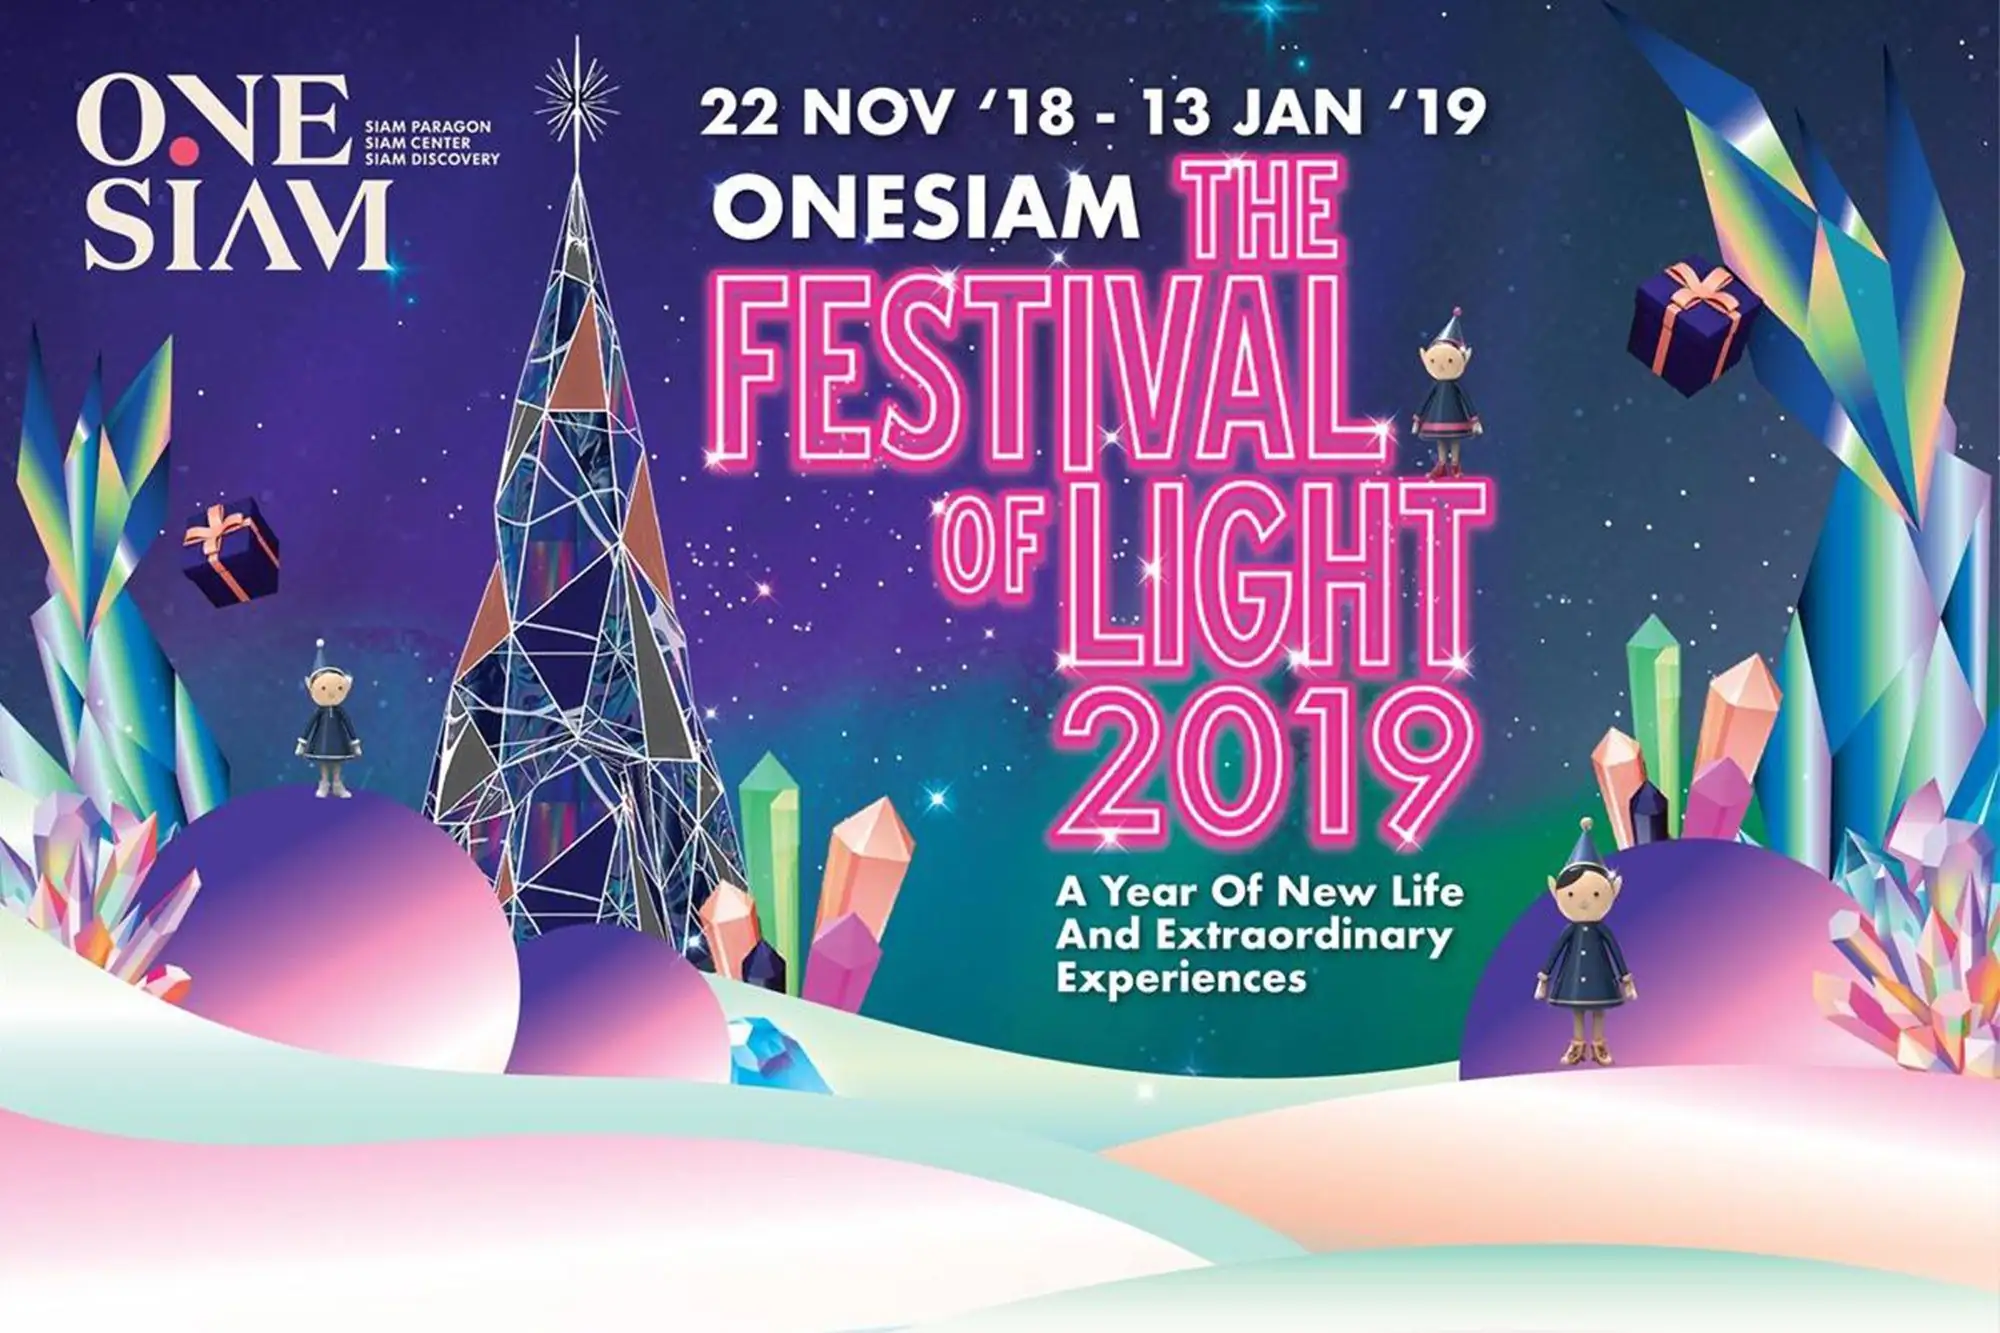 曼谷暹羅商圈OneSiam以極光為靈感打造水晶聖誕樹